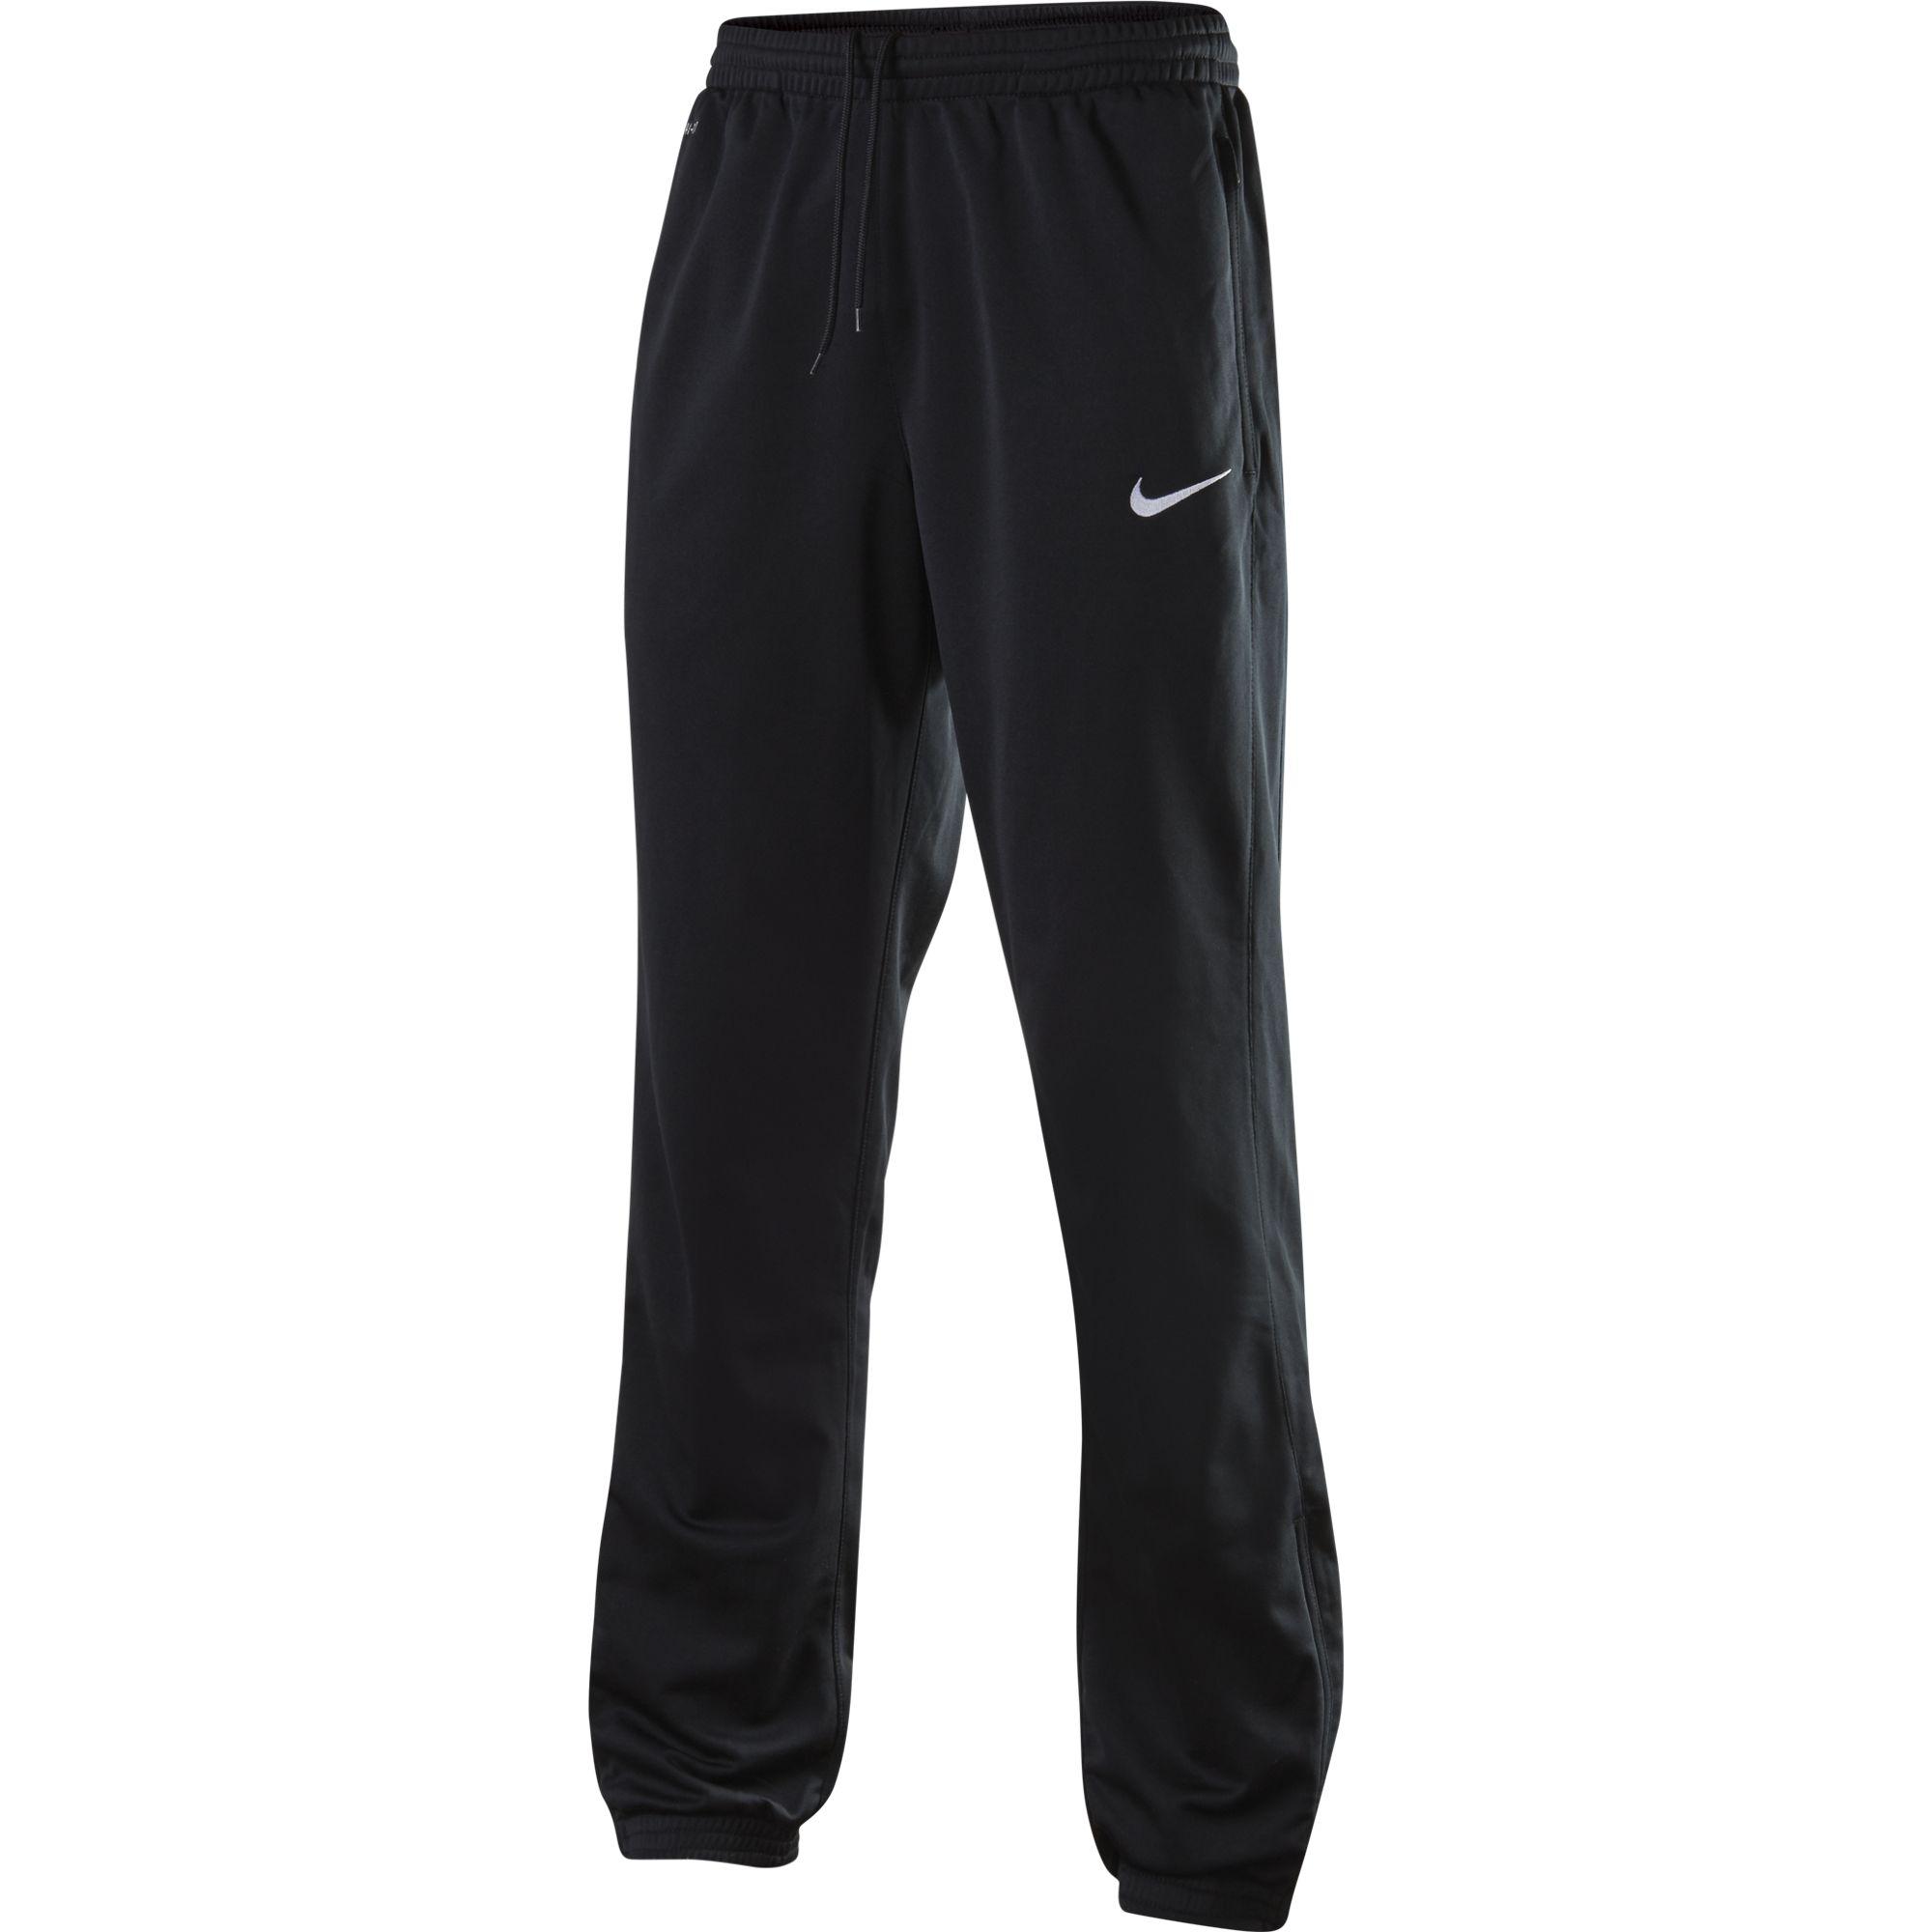 Nike Mens Cuffed Training Pants - Black - Tennisnuts.com